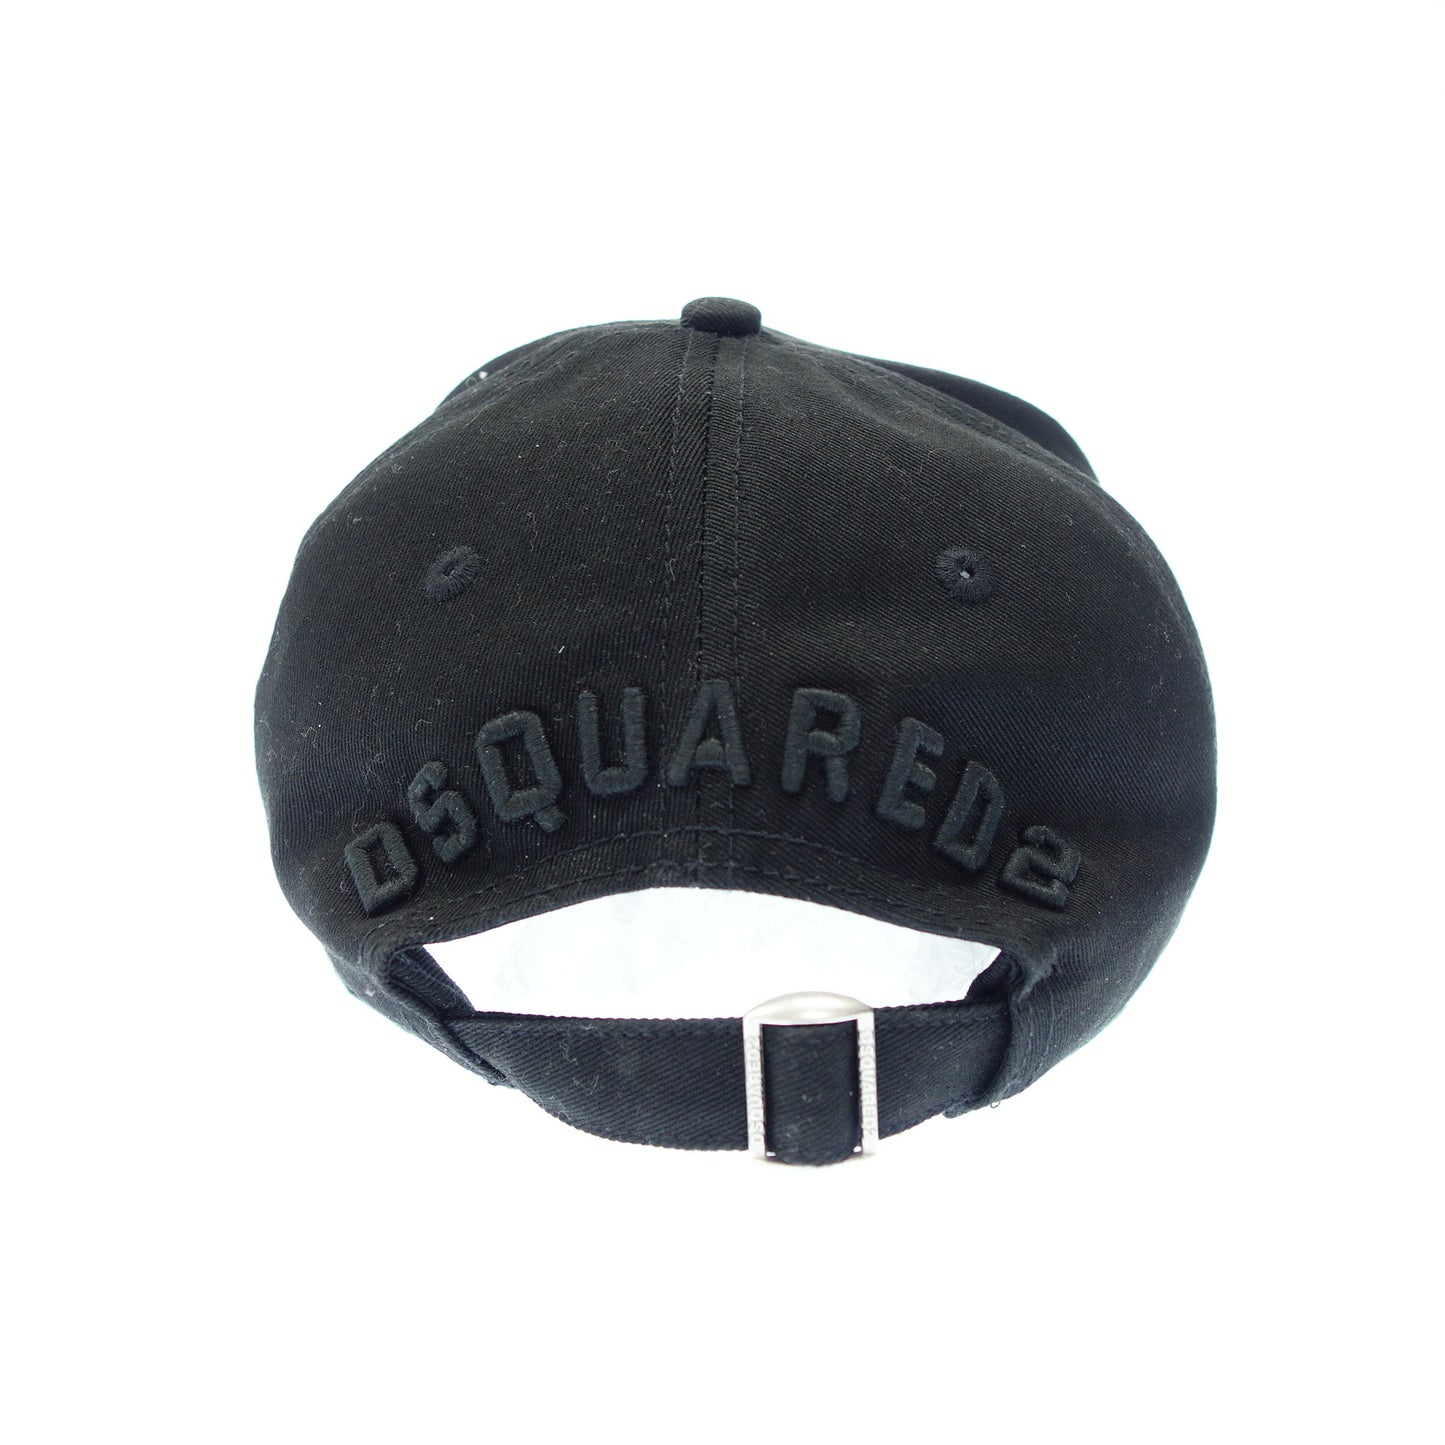 状况良好◆D Squared 棒球帽 ICON 黑色 DSQUARED2 [AFI21] 